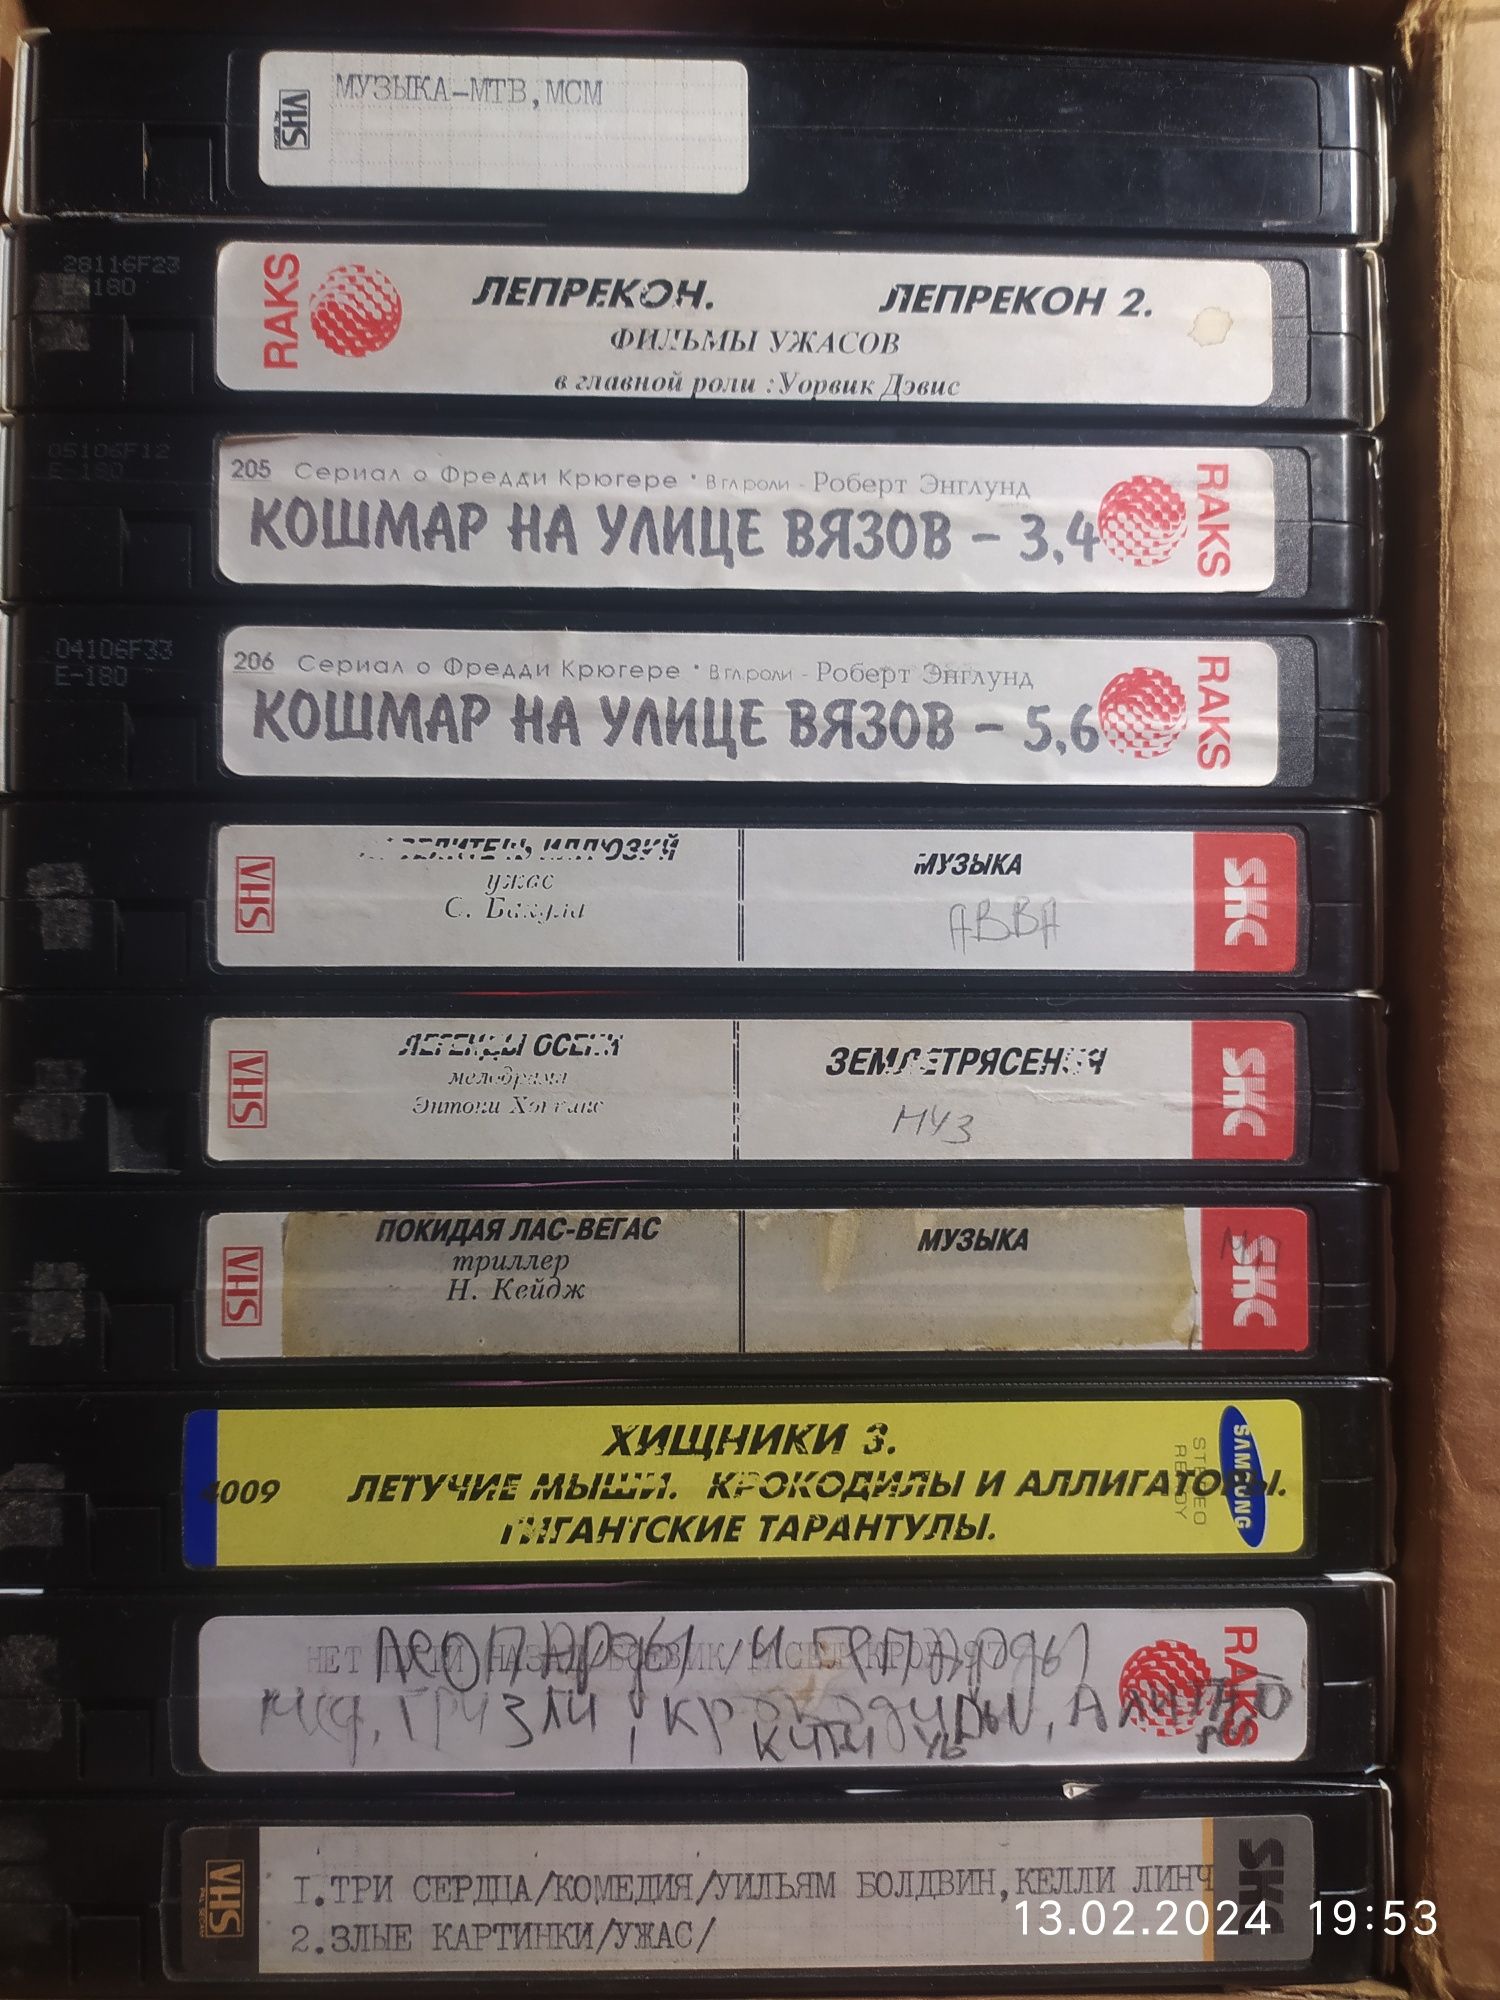 Видео кассеты с фильмами